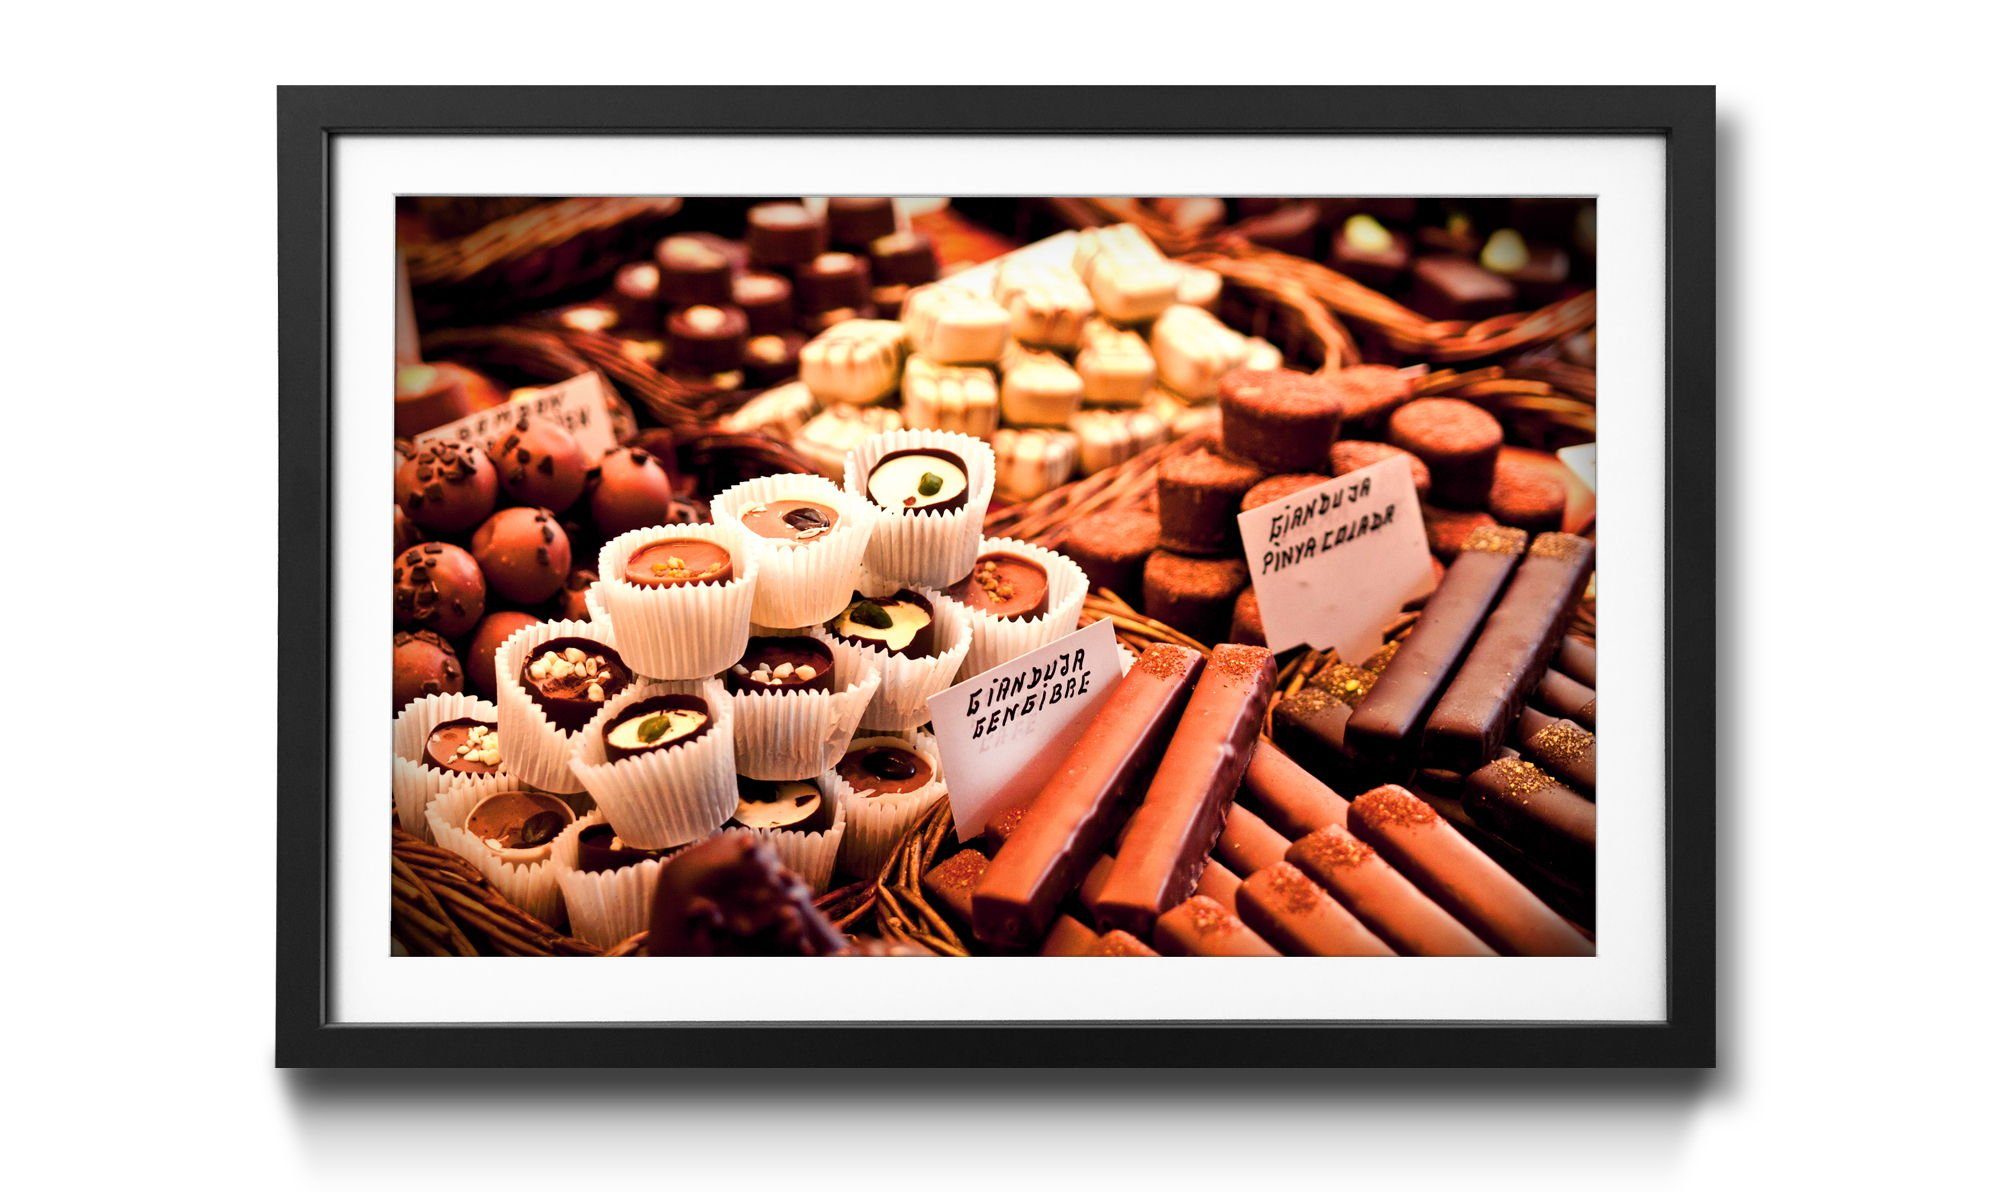 Wandbild, 4 erhältlich Größen in Rahmen Schokolade, Chocolate, Bild WandbilderXXL mit